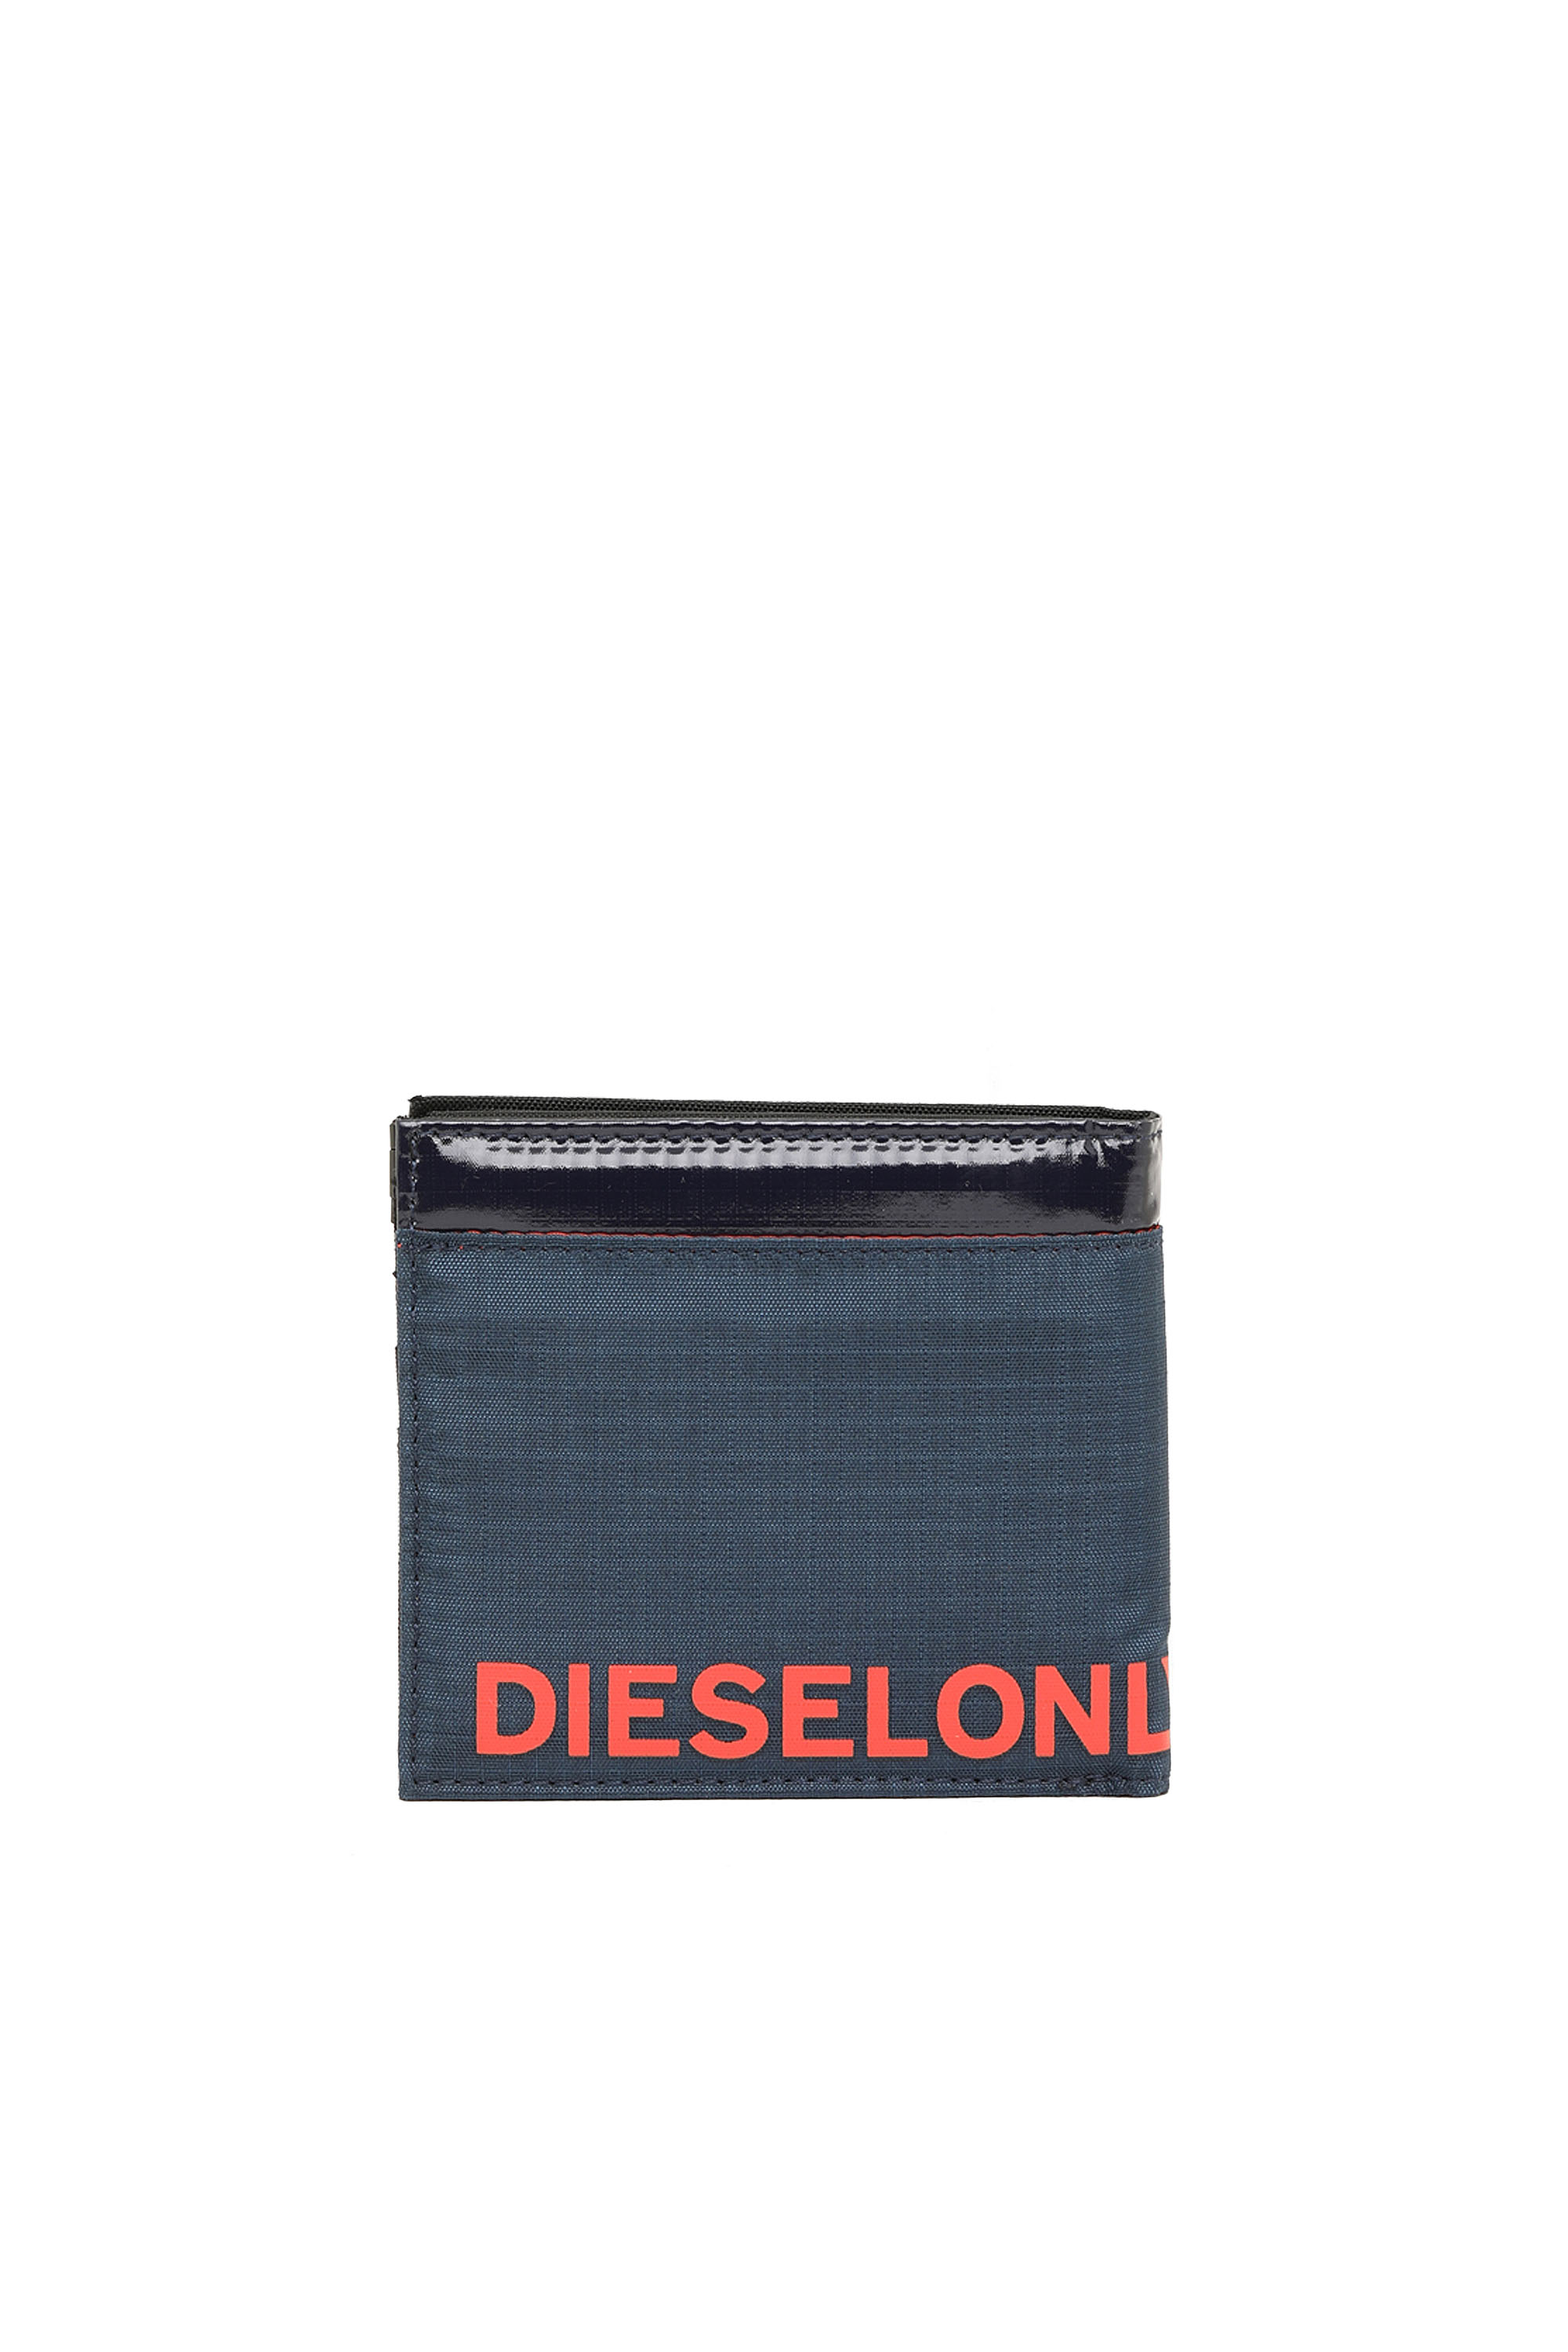 Diesel - HIRESH SP, Blue/Red - Image 2